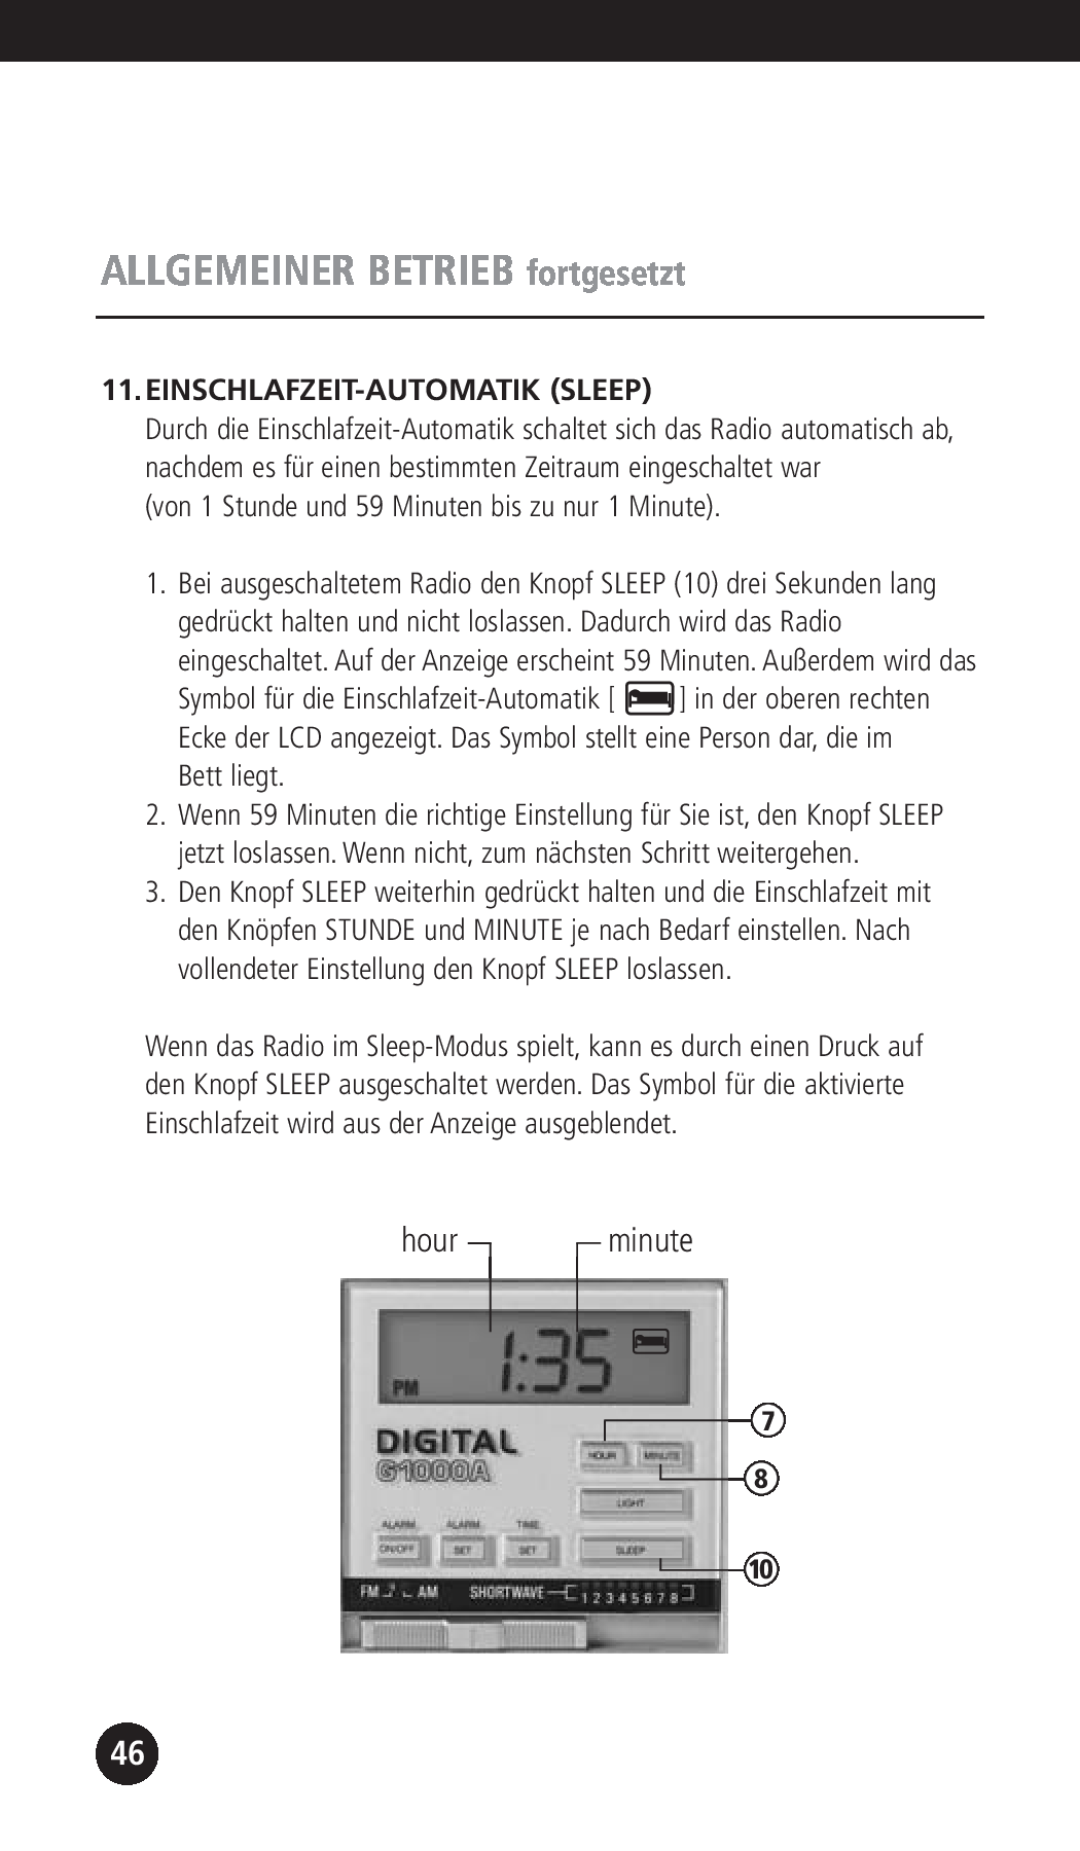 Eton G1000A operation manual Einschlafzeit-Automatiksleep, ALLGEMEINER BETRIEB fortgesetzt, hour, minute 